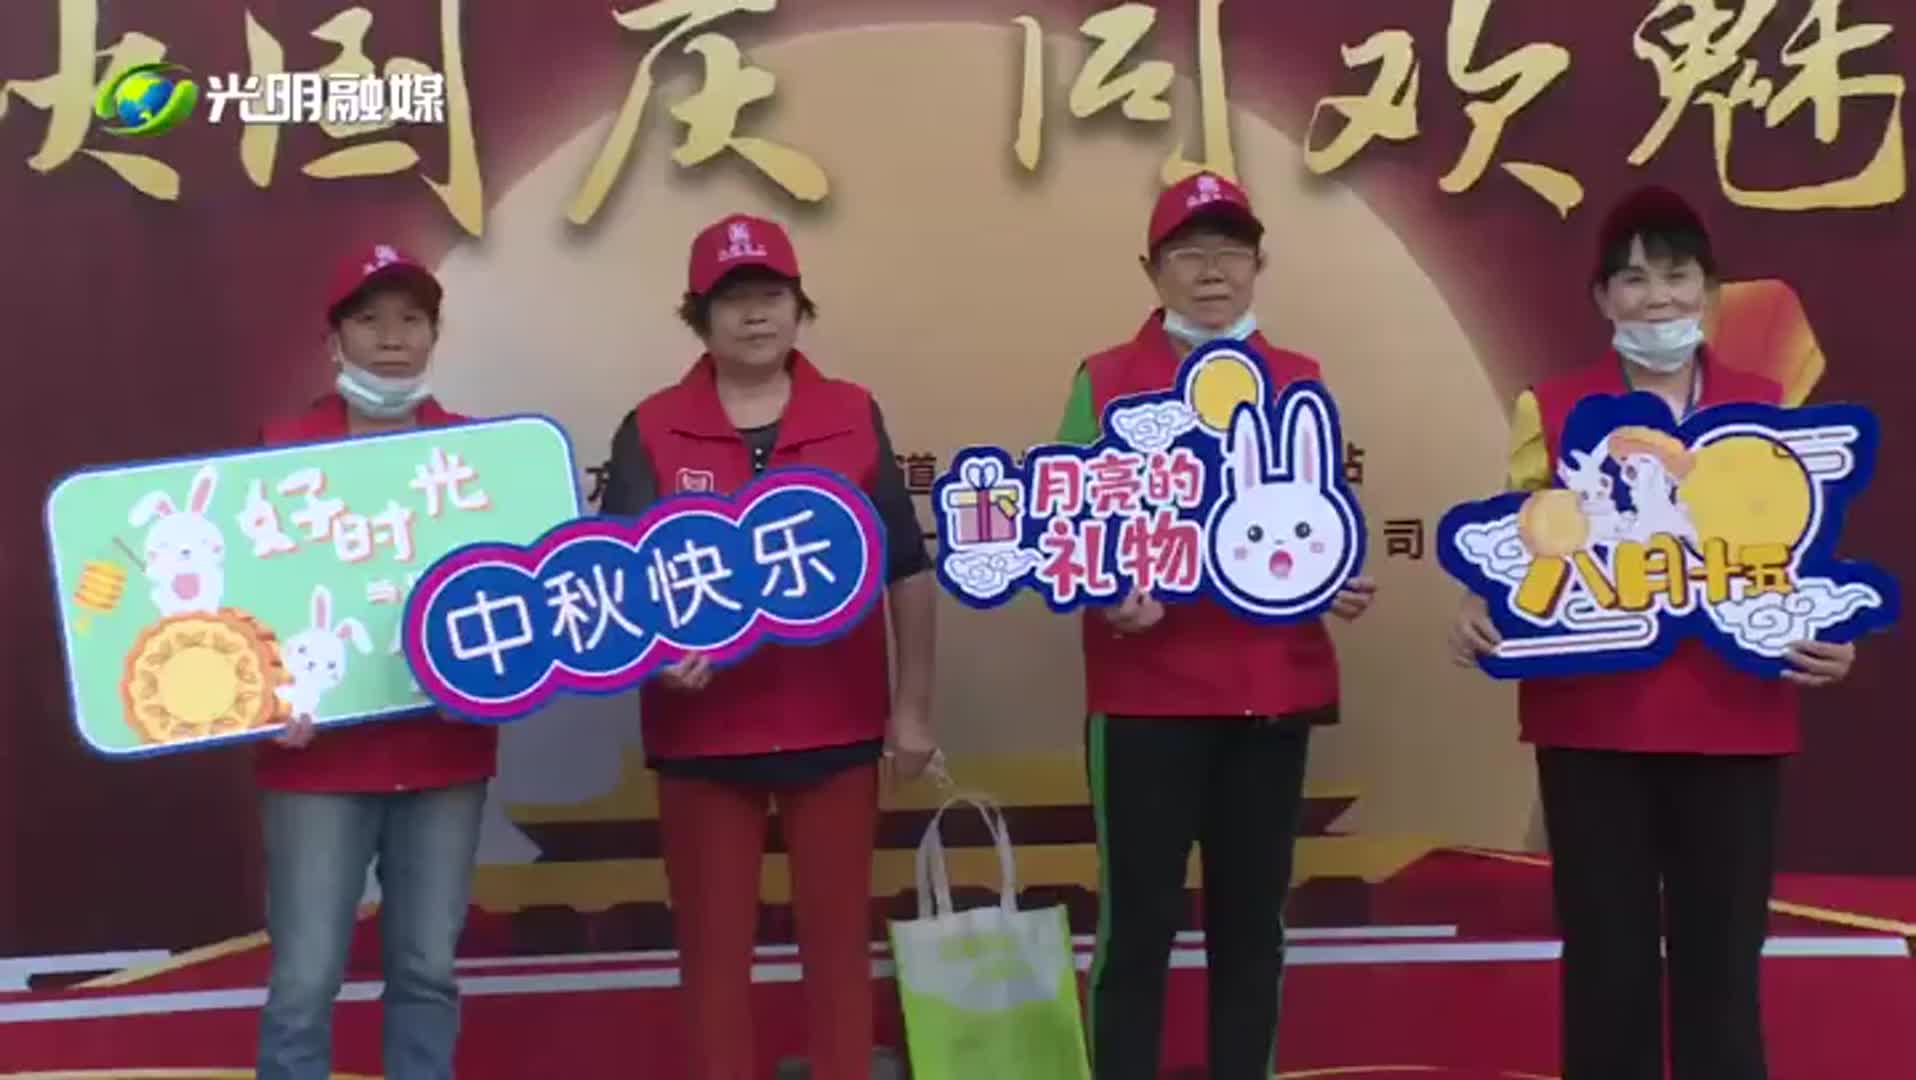 视频 | 玉塘街道长圳社区举办游园会活动